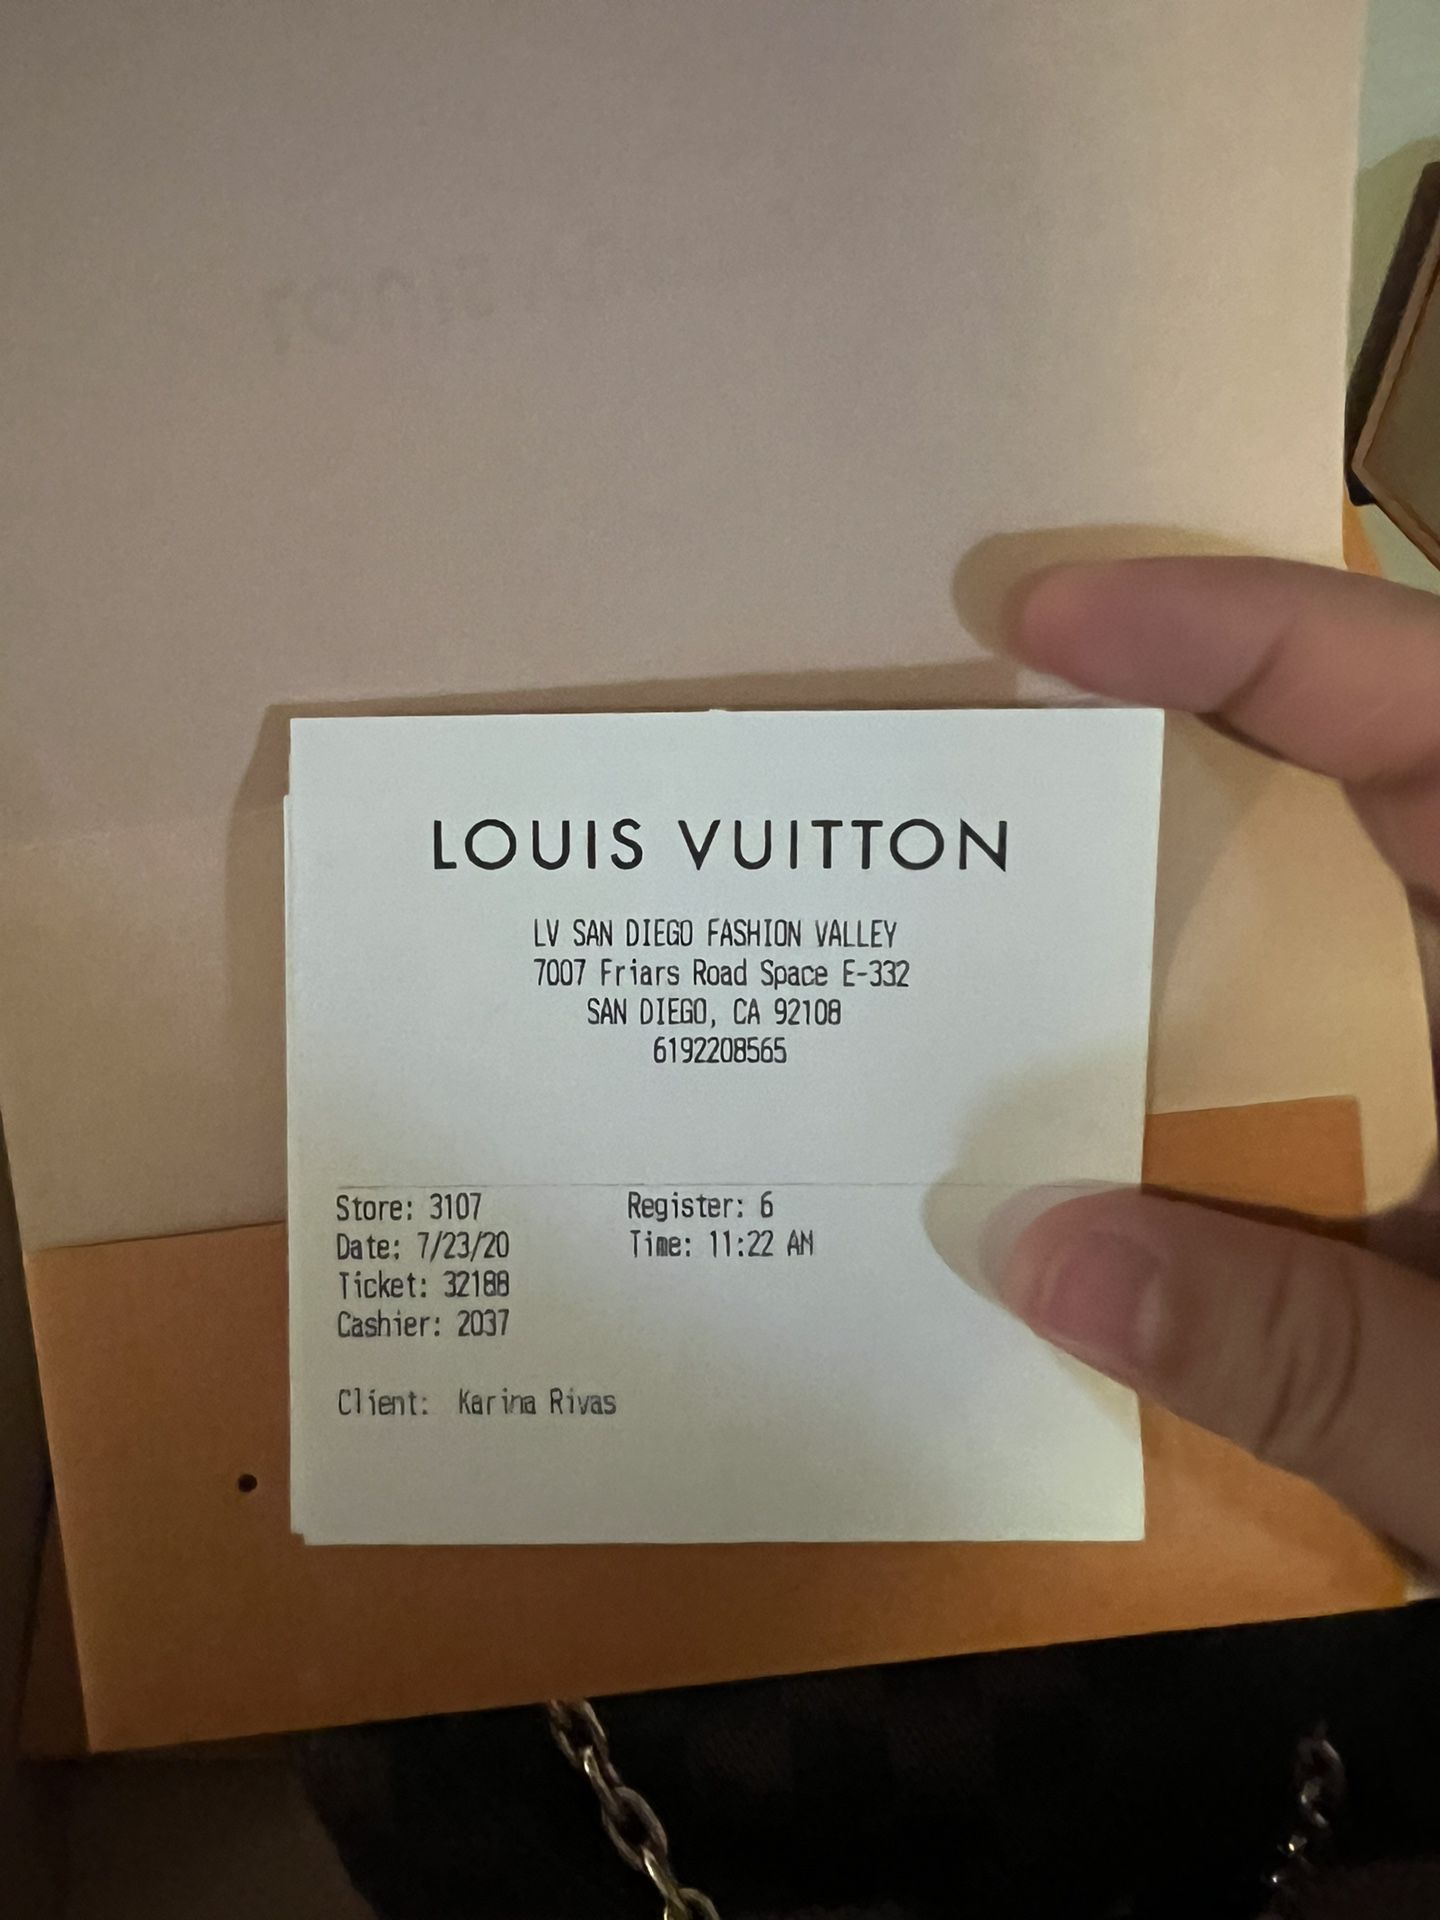 Louis Vuitton 7007 Friars Rd, San Diego, Ca 92108